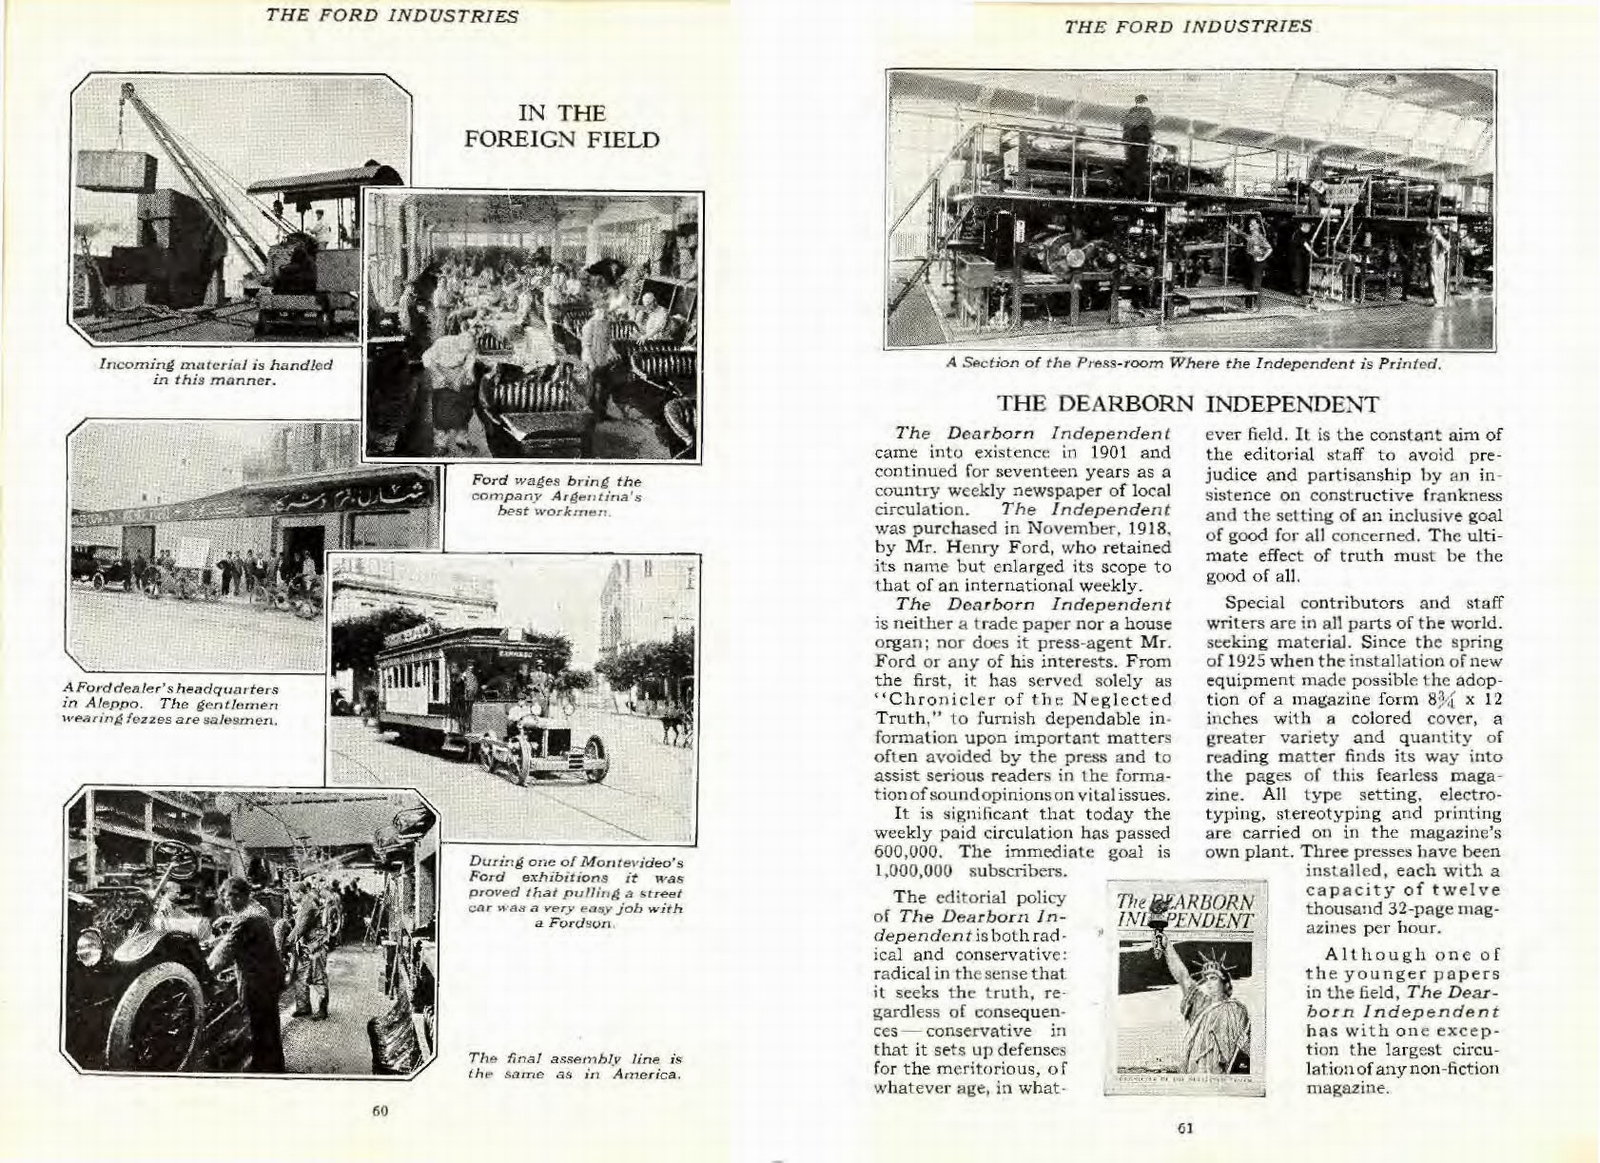 n_1926 Ford Industries-60-61.jpg